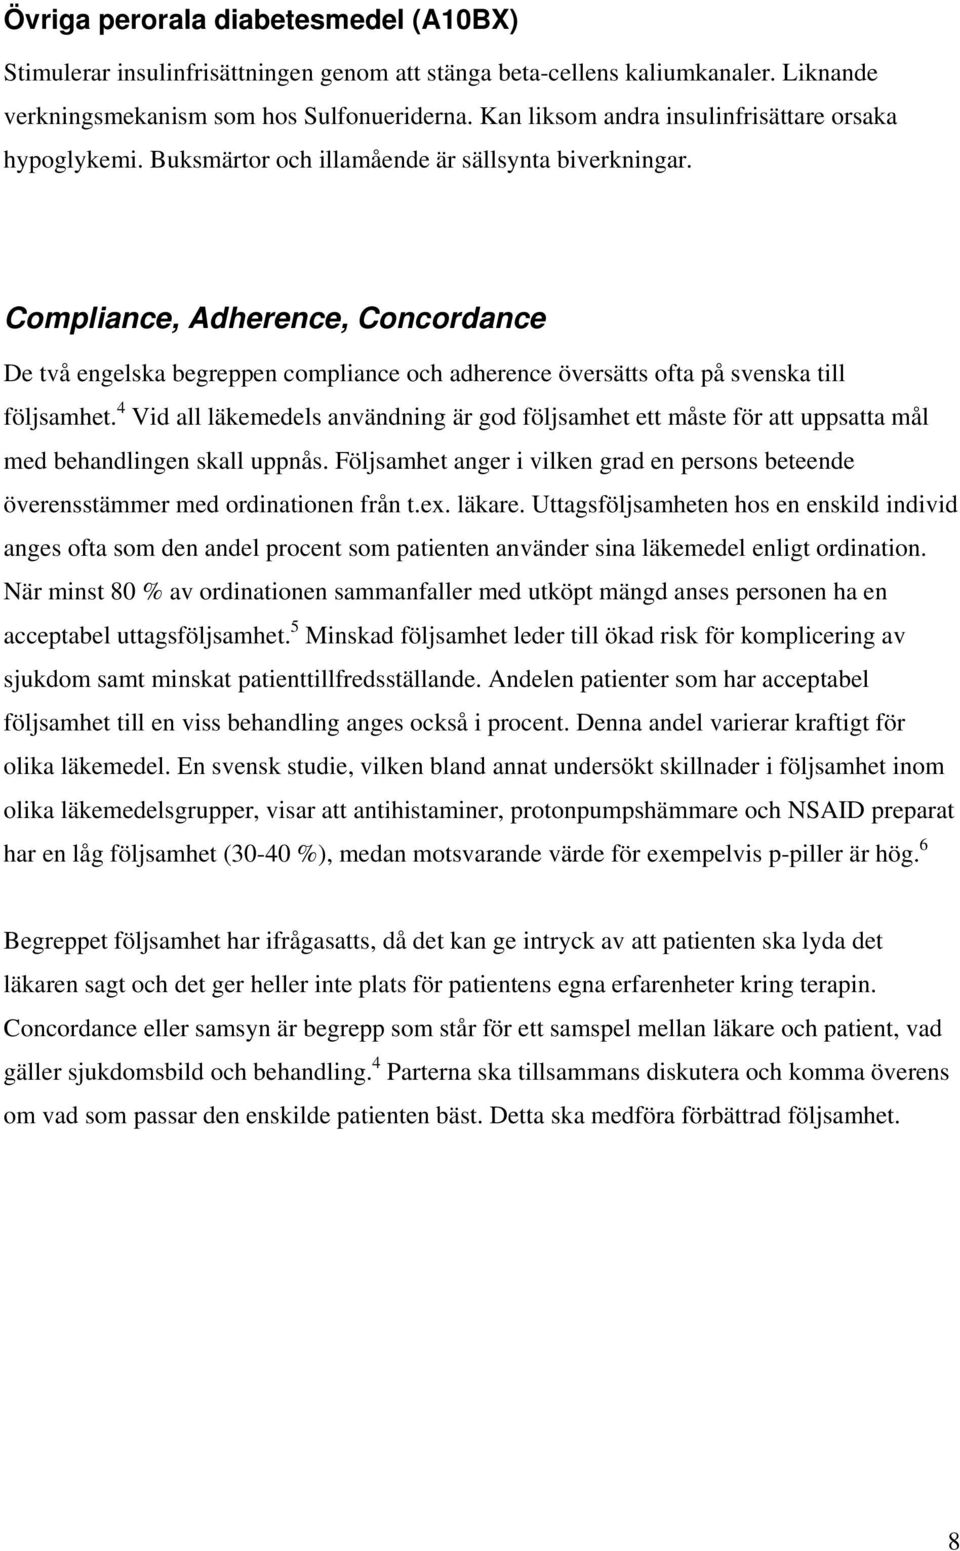 Compliance, Adherence, Concordance De två engelska begreppen compliance och adherence översätts ofta på svenska till följsamhet.